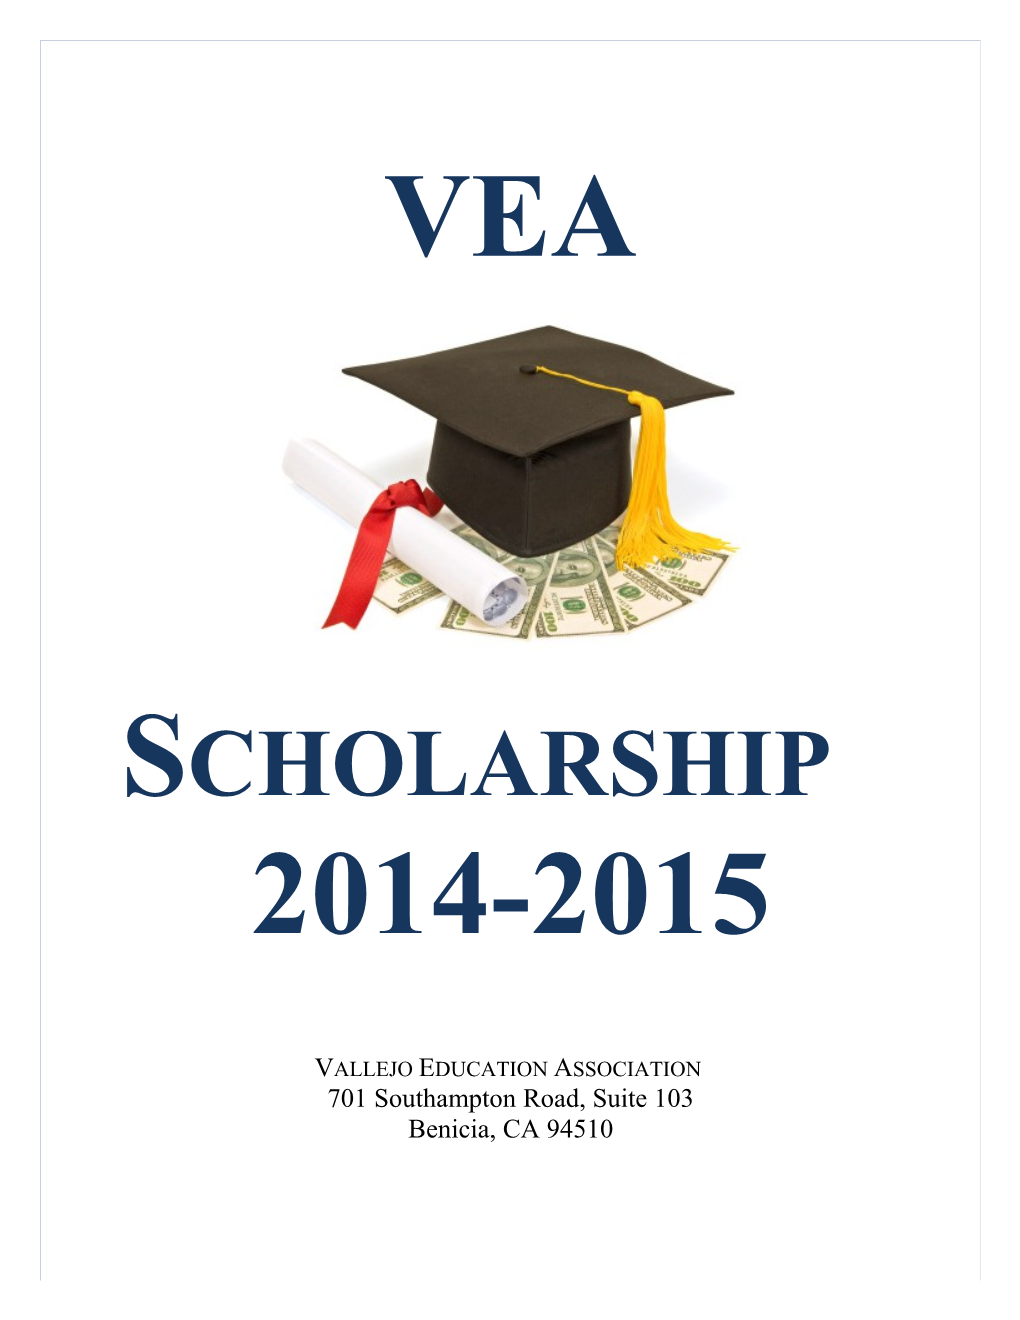 Vallejo Education Association